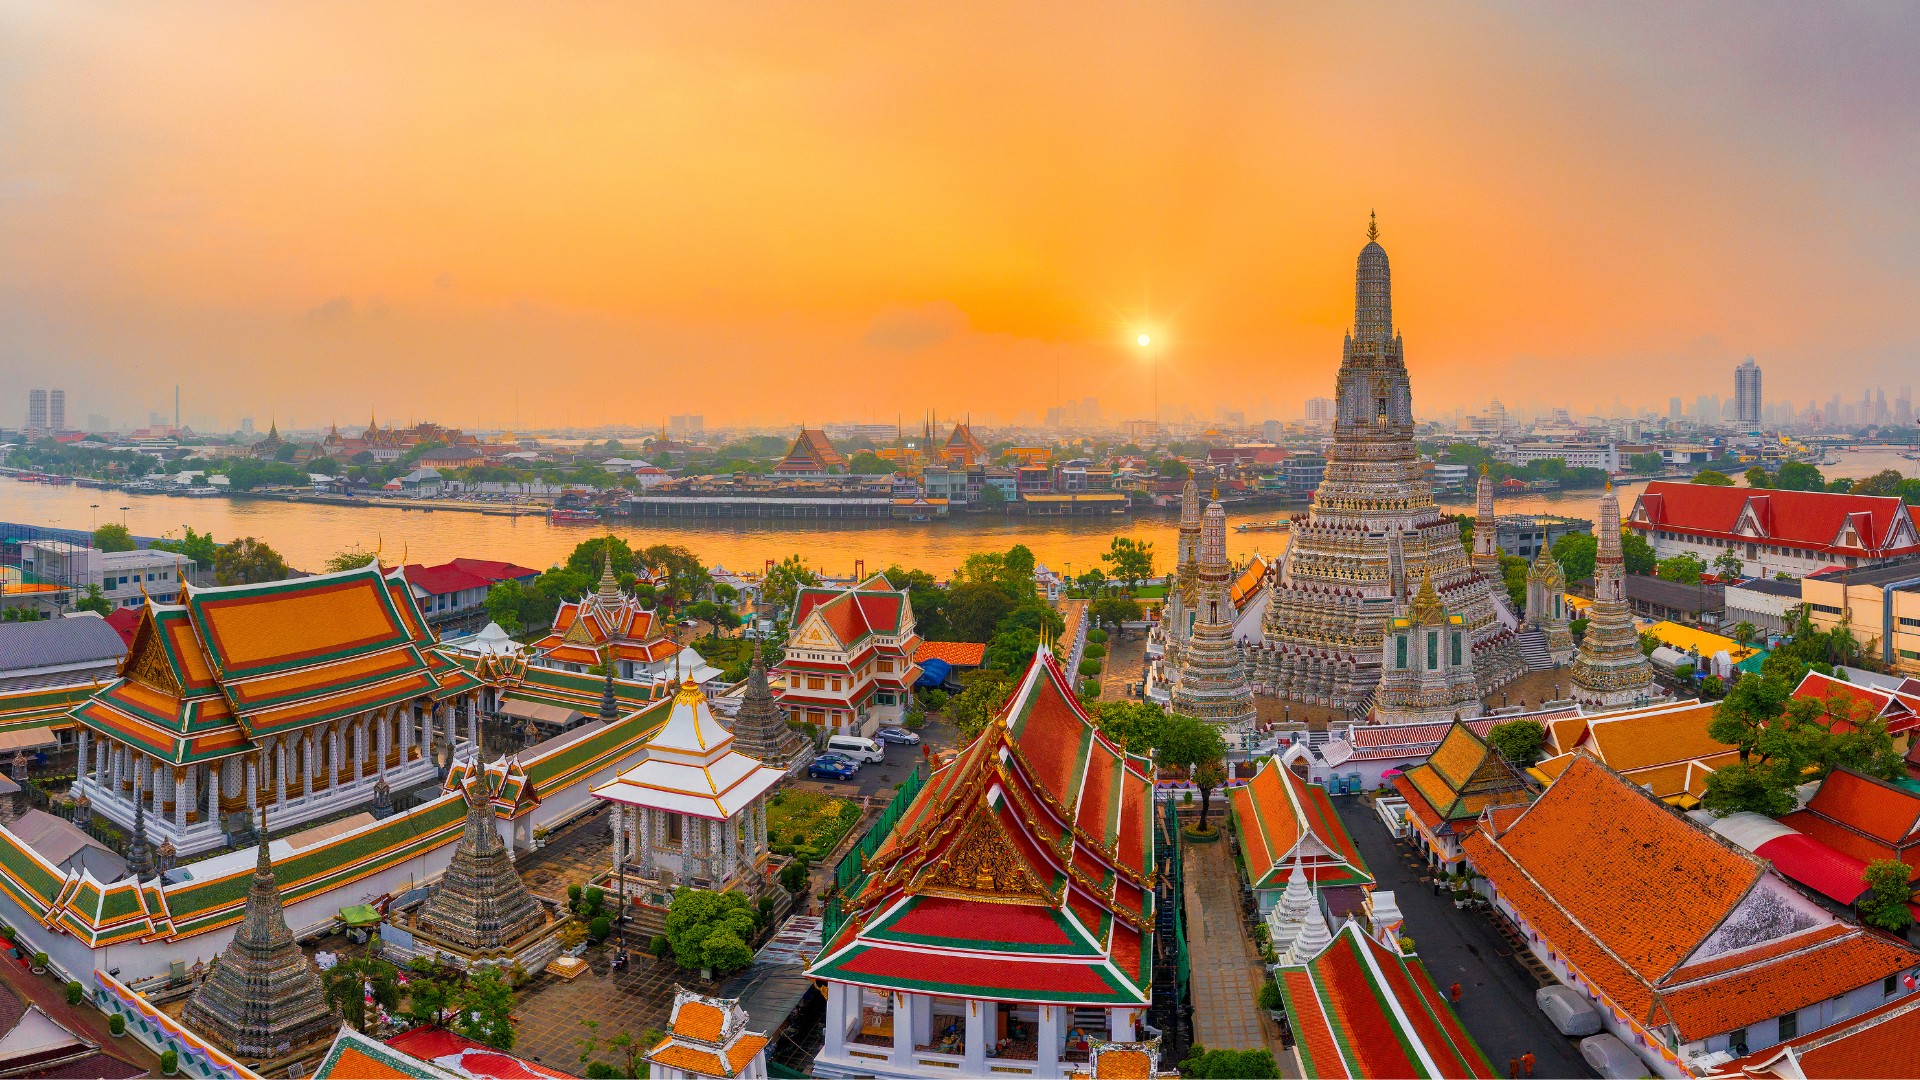 Bangkok - Wat Arun Ratchawararam Ratchawaramahawihan